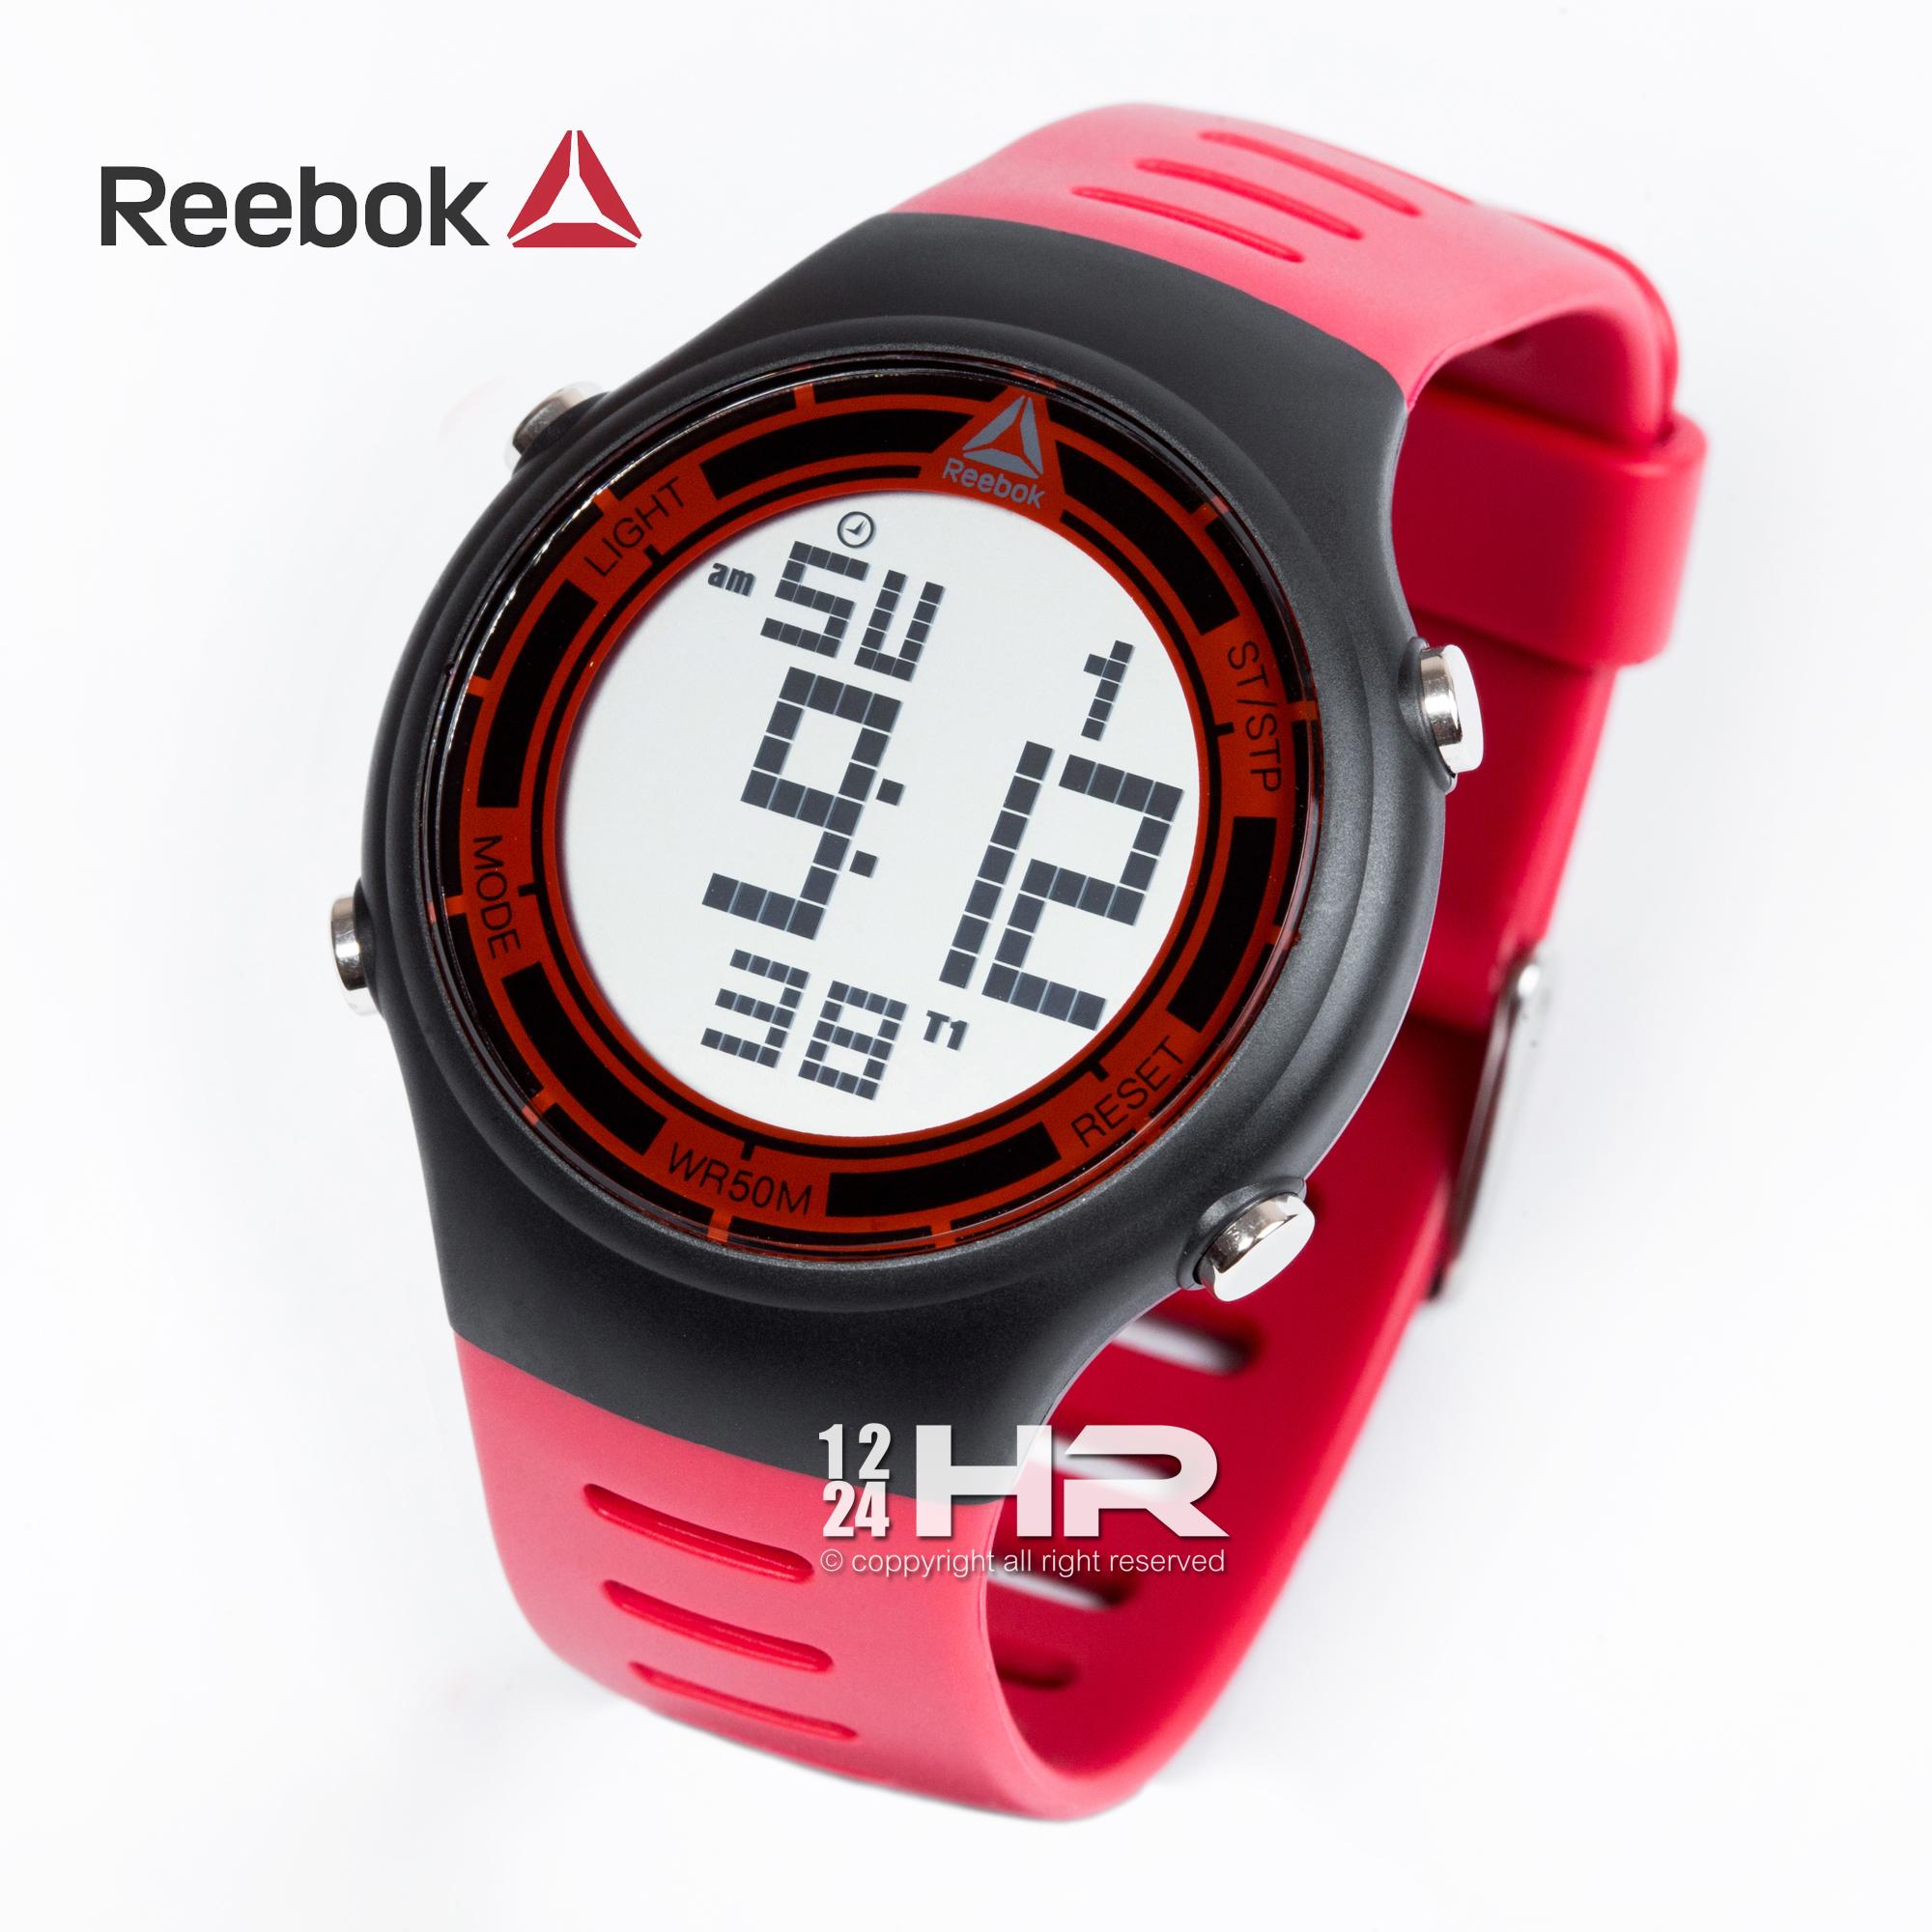 Reebok RD-RUT-G9 นาฬิกา Reebok ของแท้ สายยาง รับประกันศูนย์ไทย 1 ปี 12/24HR RD-RUT-G9-PBPR-S1, RD-RUT-G9-PBPB-RB